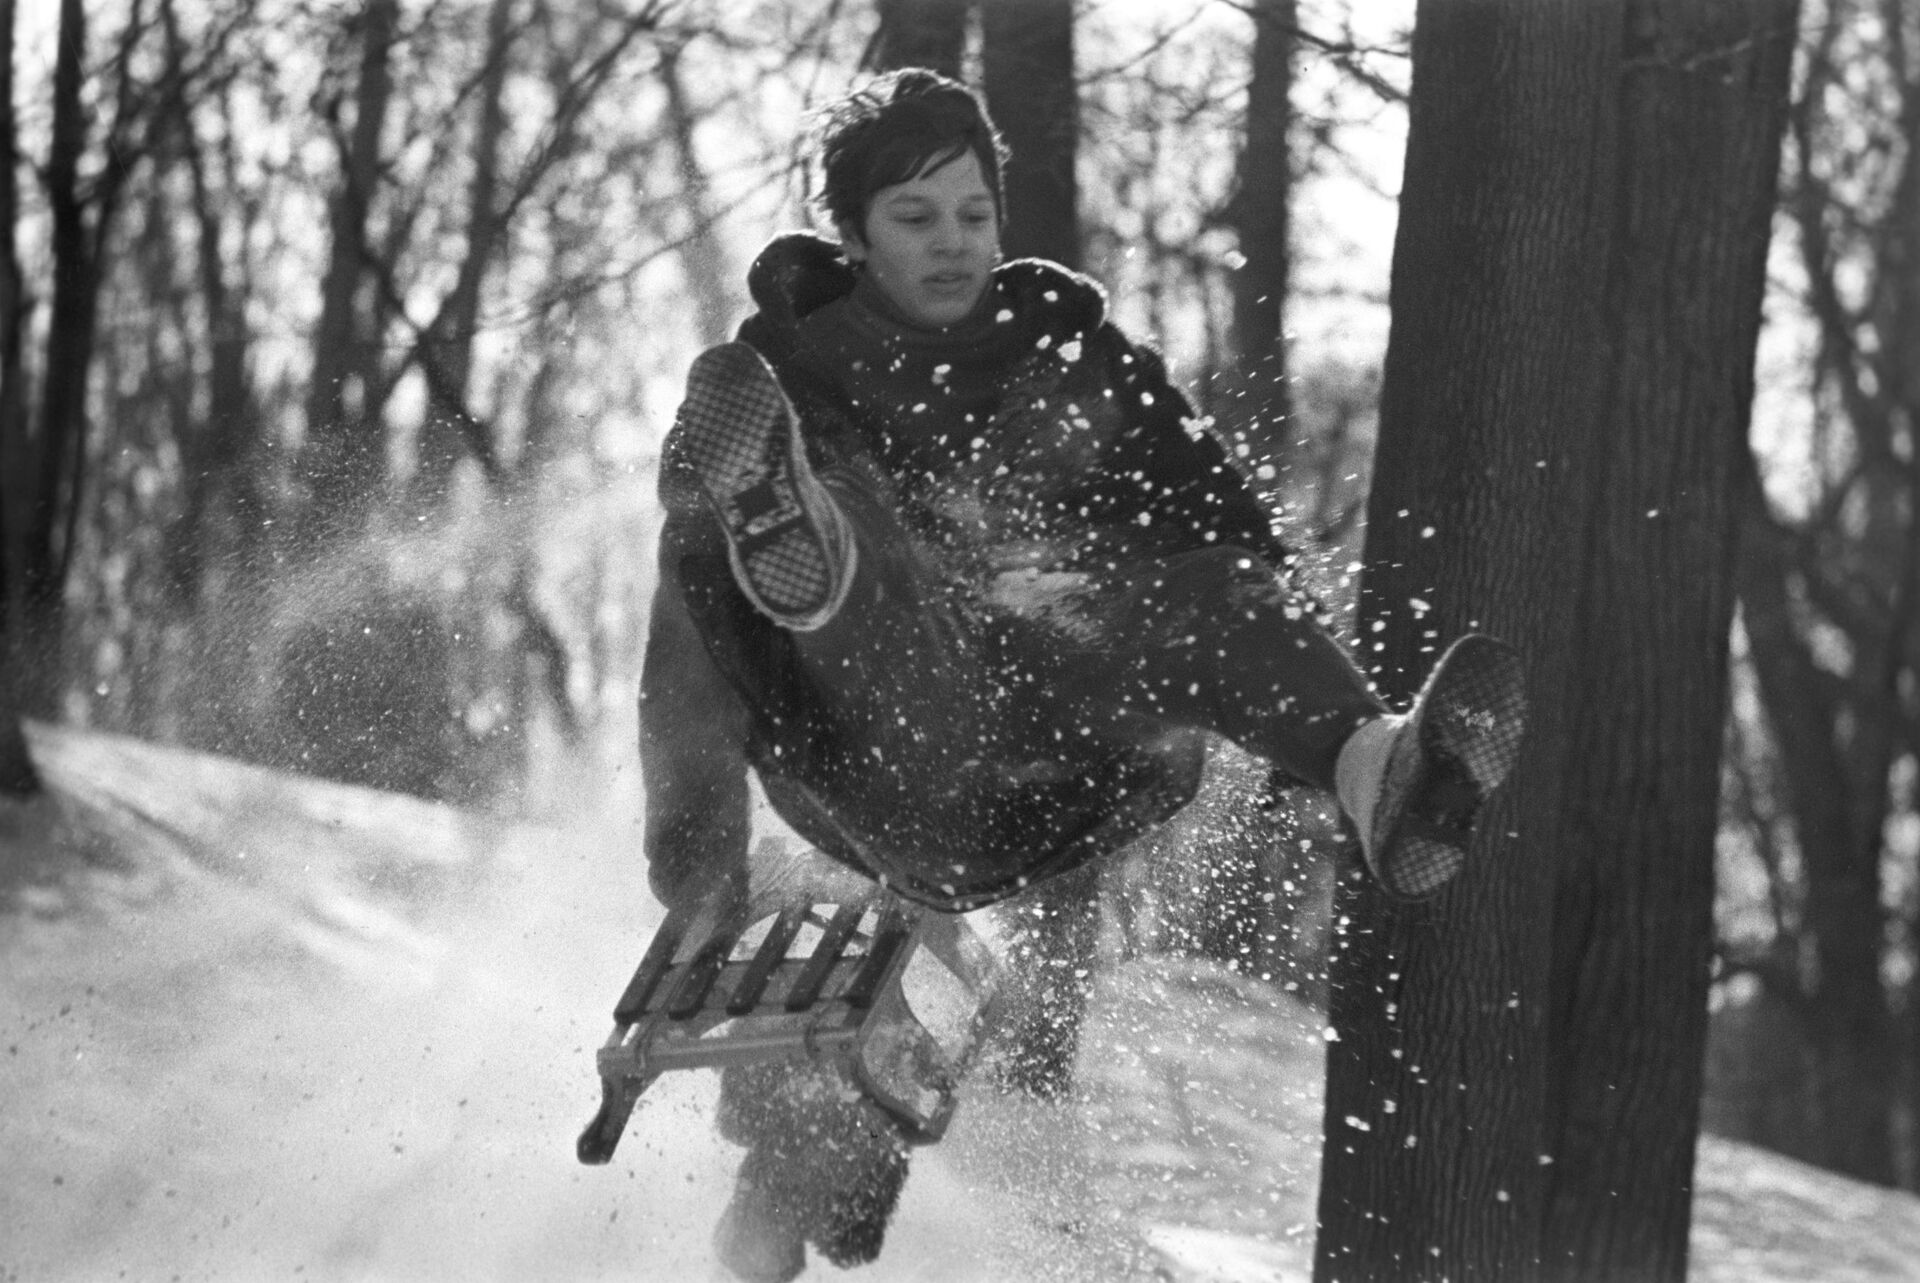 Мальчик катается на санках, 1976 год - Sputnik Беларусь, 1920, 26.12.2021